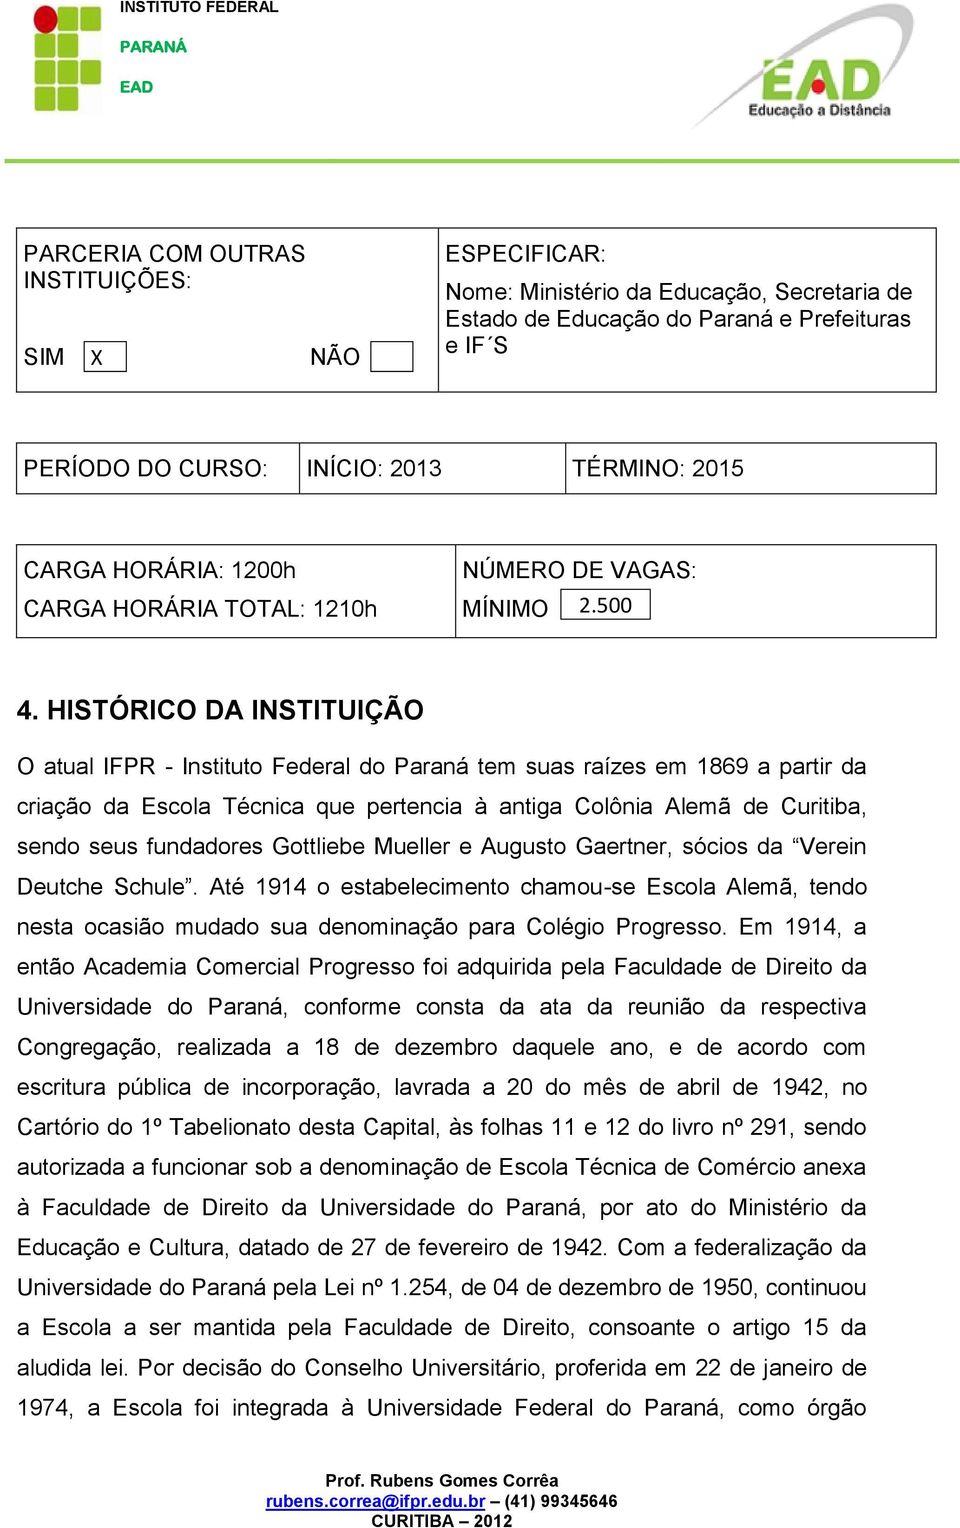 HISTÓRICO DA INSTITUIÇÃO O atual IFPR - Instituto Federal do Paraná tem suas raízes em 1869 a partir da criação da Escola Técnica que pertencia à antiga Colônia Alemã de Curitiba, sendo seus